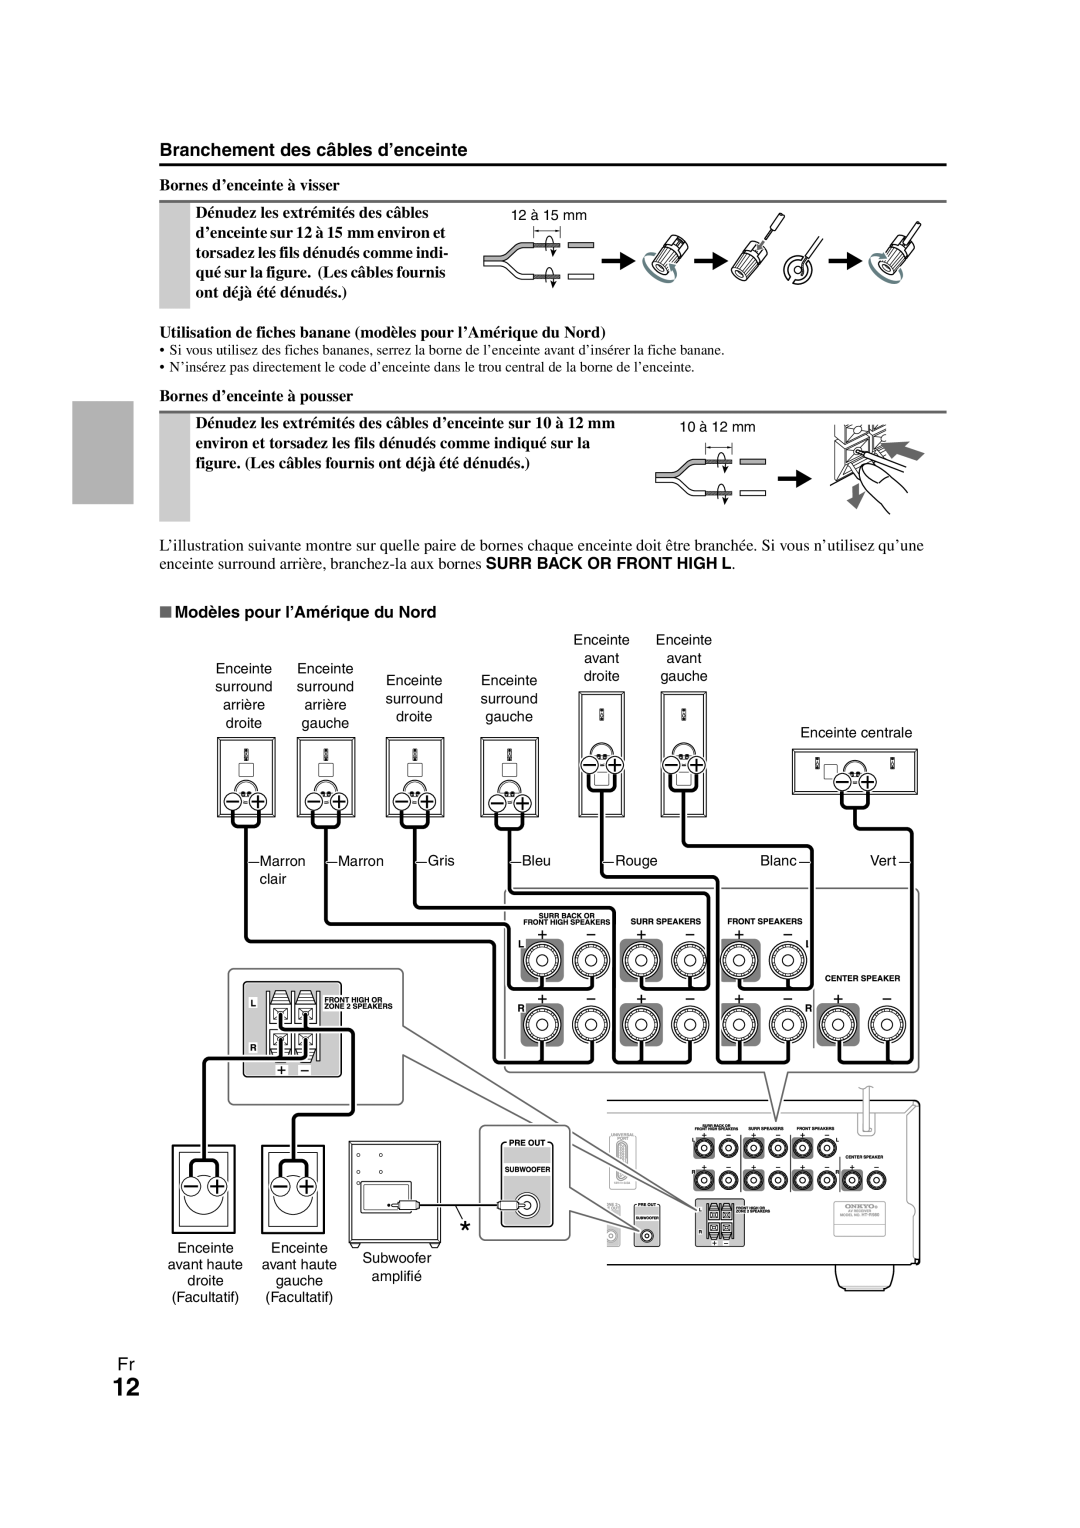 Onkyo HT-R980 instruction manual Branchement des câbles d’enceinte, Modèles pour l’Amérique du Nord 